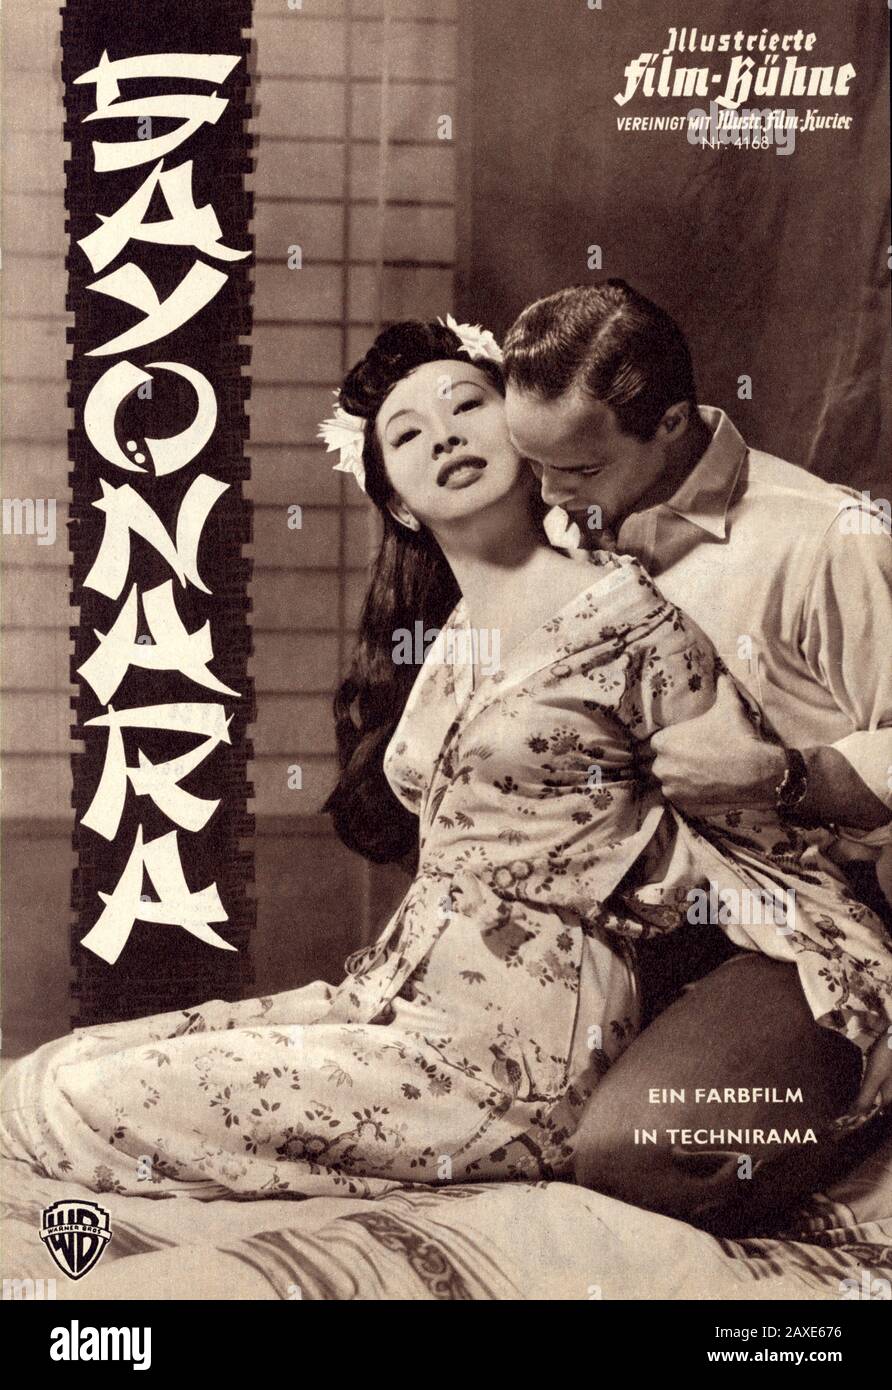 1957 : le célèbre acteur de cinéma américain MARLON BRANDO avec MIIKO TAKA à SAYONARA par Joshua Logan , d'un roman de James A. Michener . Couverture du film ILLUSTRIERTE FILM-BUHNE , 1957 - ATTRICE - FILM - CINÉMA - ASBURGO - ABSBURGO - portrait - ritrato - sorriso - amoureux - innamorati - amanti - scène d'amour - amore - FILM - portrait - ritrato - CINÉMA - FILM - locandina pubblicità con cinematografica - AFFICHE - embrase - abbraccio - baiser - bacio - copertina - couverture - sourire - nuance - orologio da polso --- Archivio GBB Banque D'Images